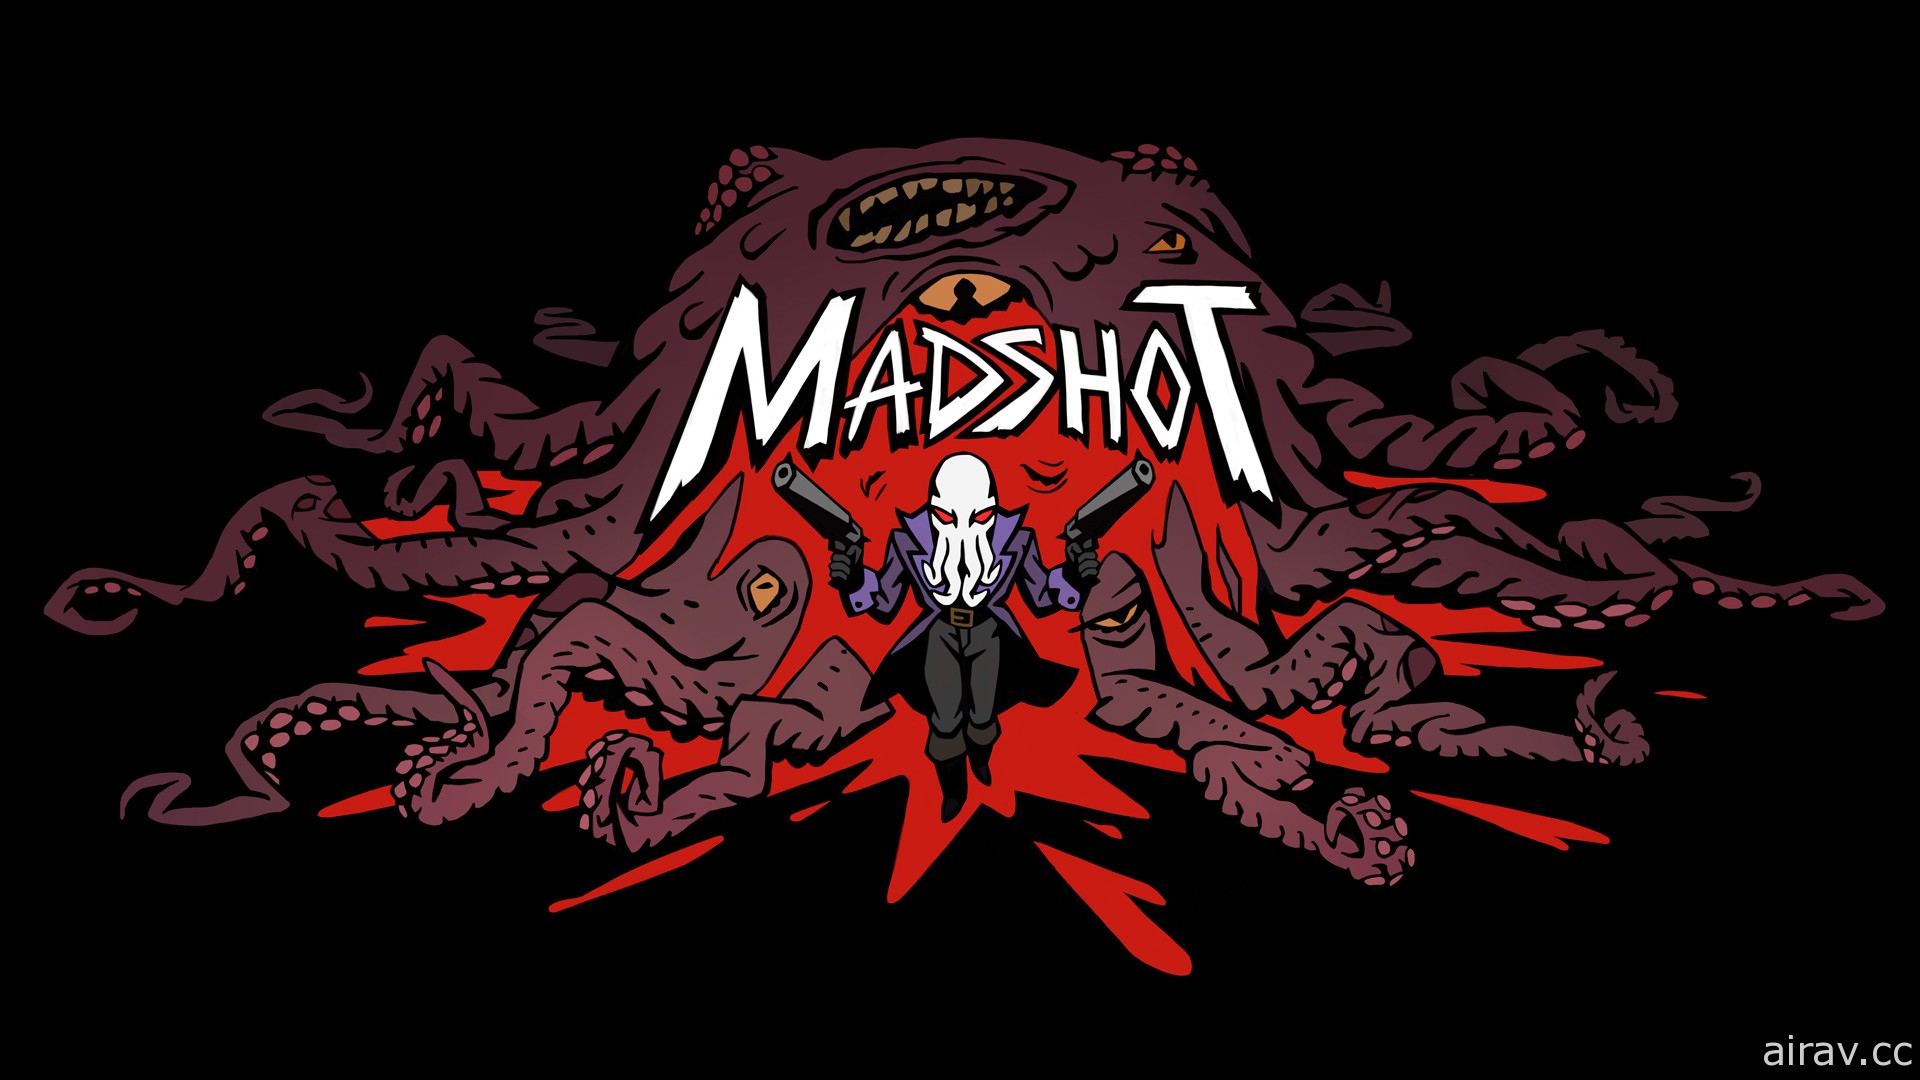 節奏明快的 Rogue-lite 特技射擊遊戲《Madshot》即將開放搶先體驗